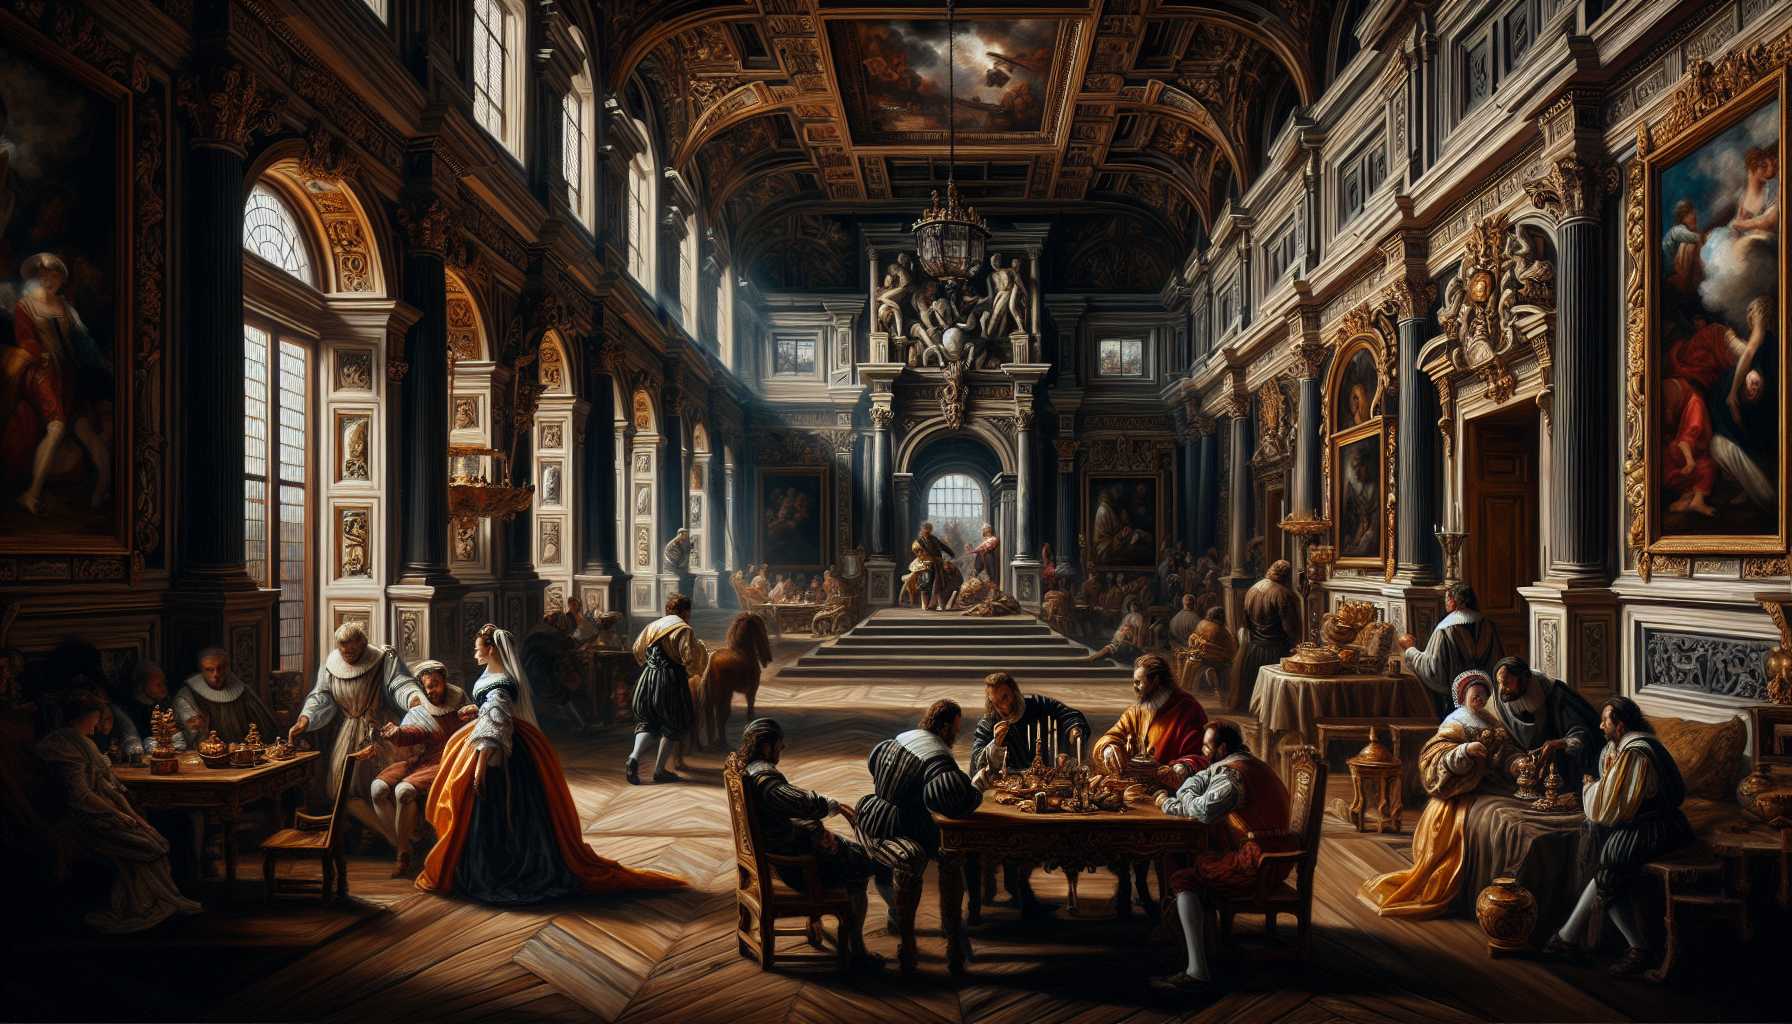 beautiful works of Caravaggio in a grandiose Netflix series scene